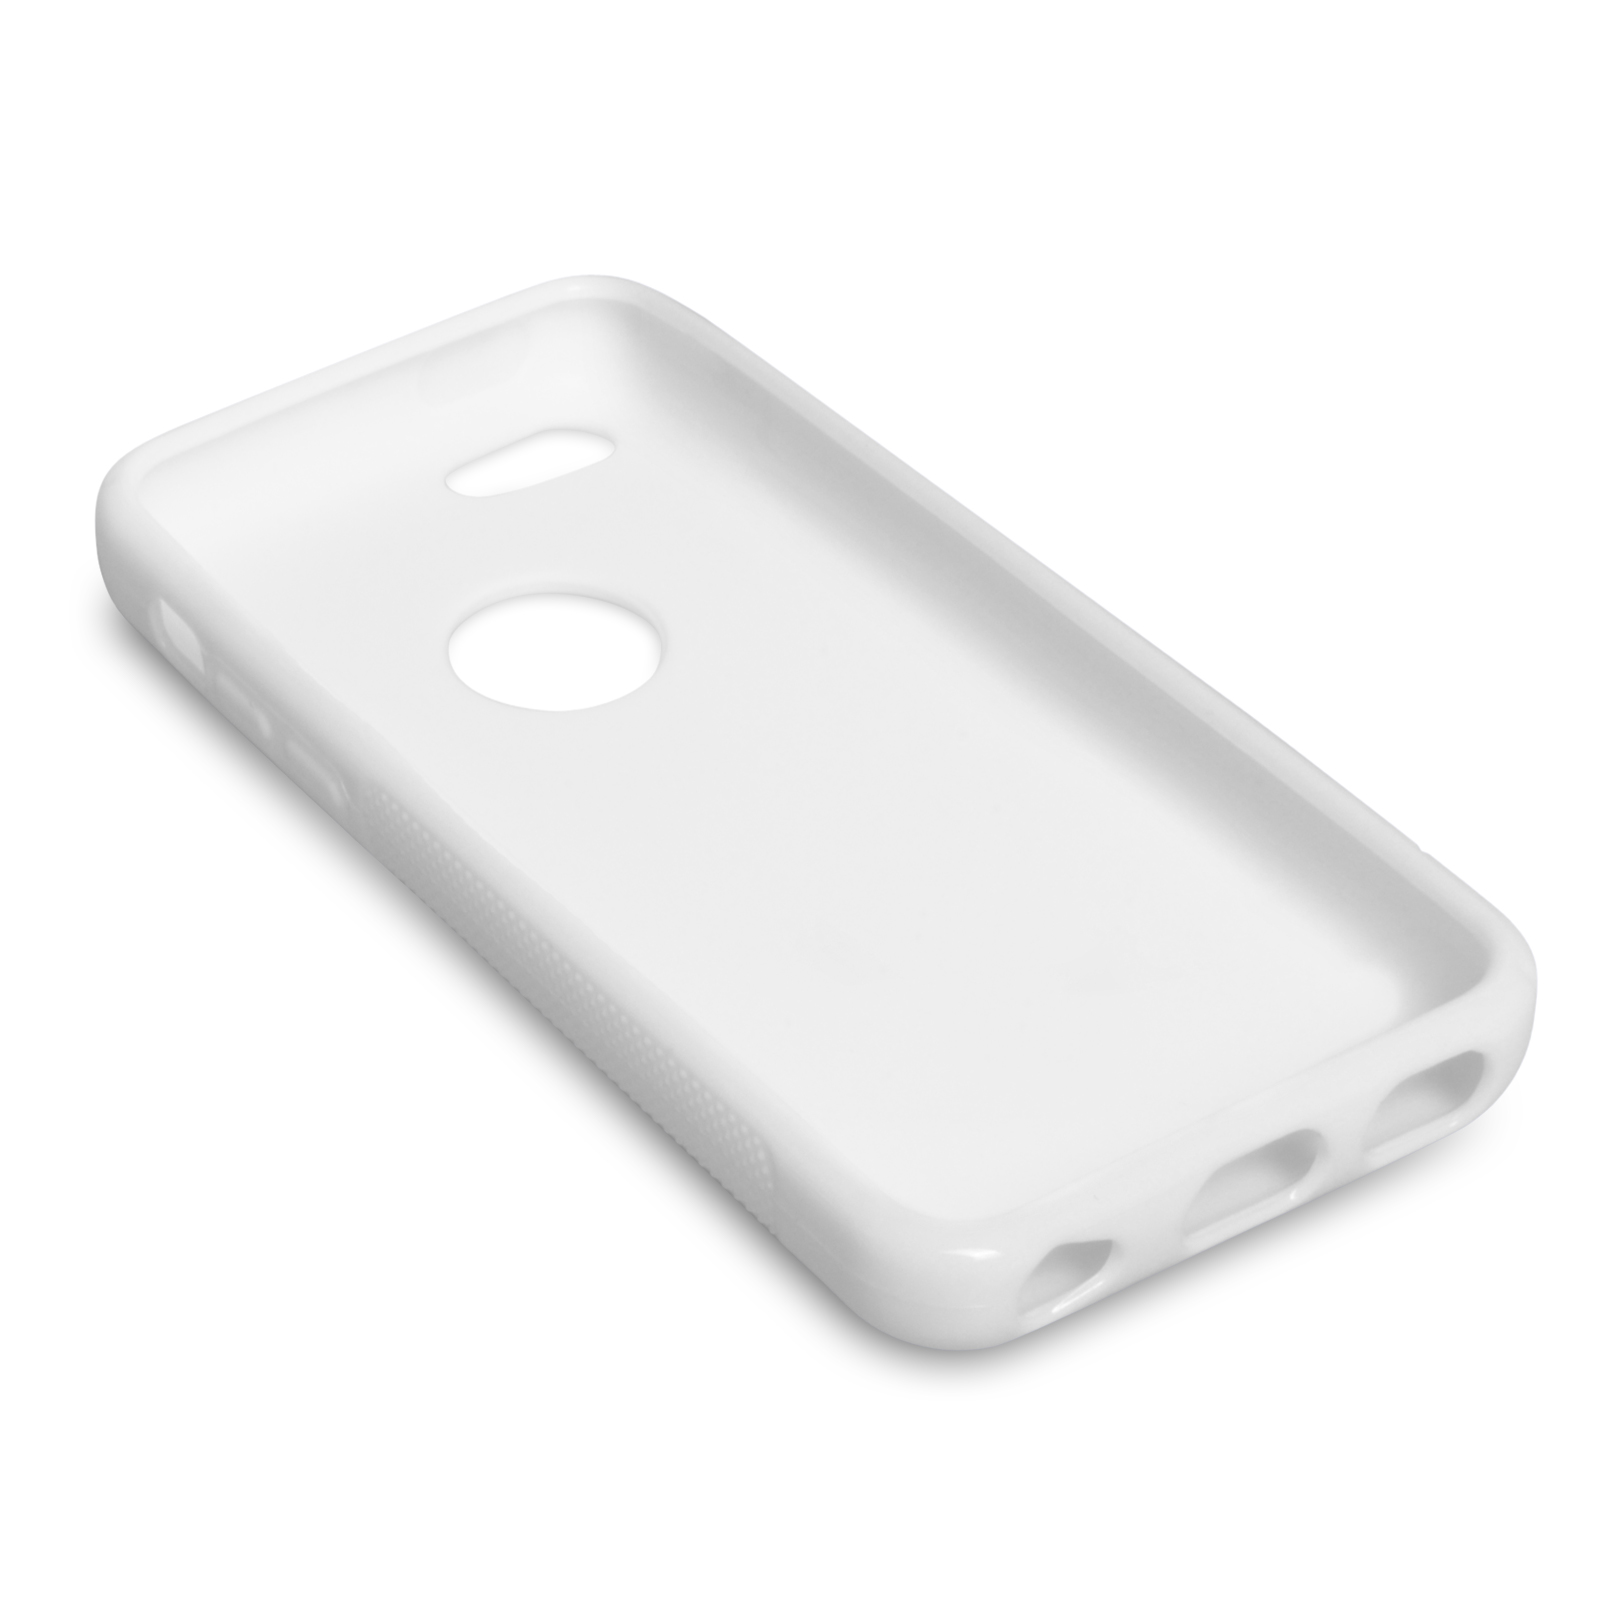 Caseflex iPhone 5c Silicone Gel S-Line Case - White